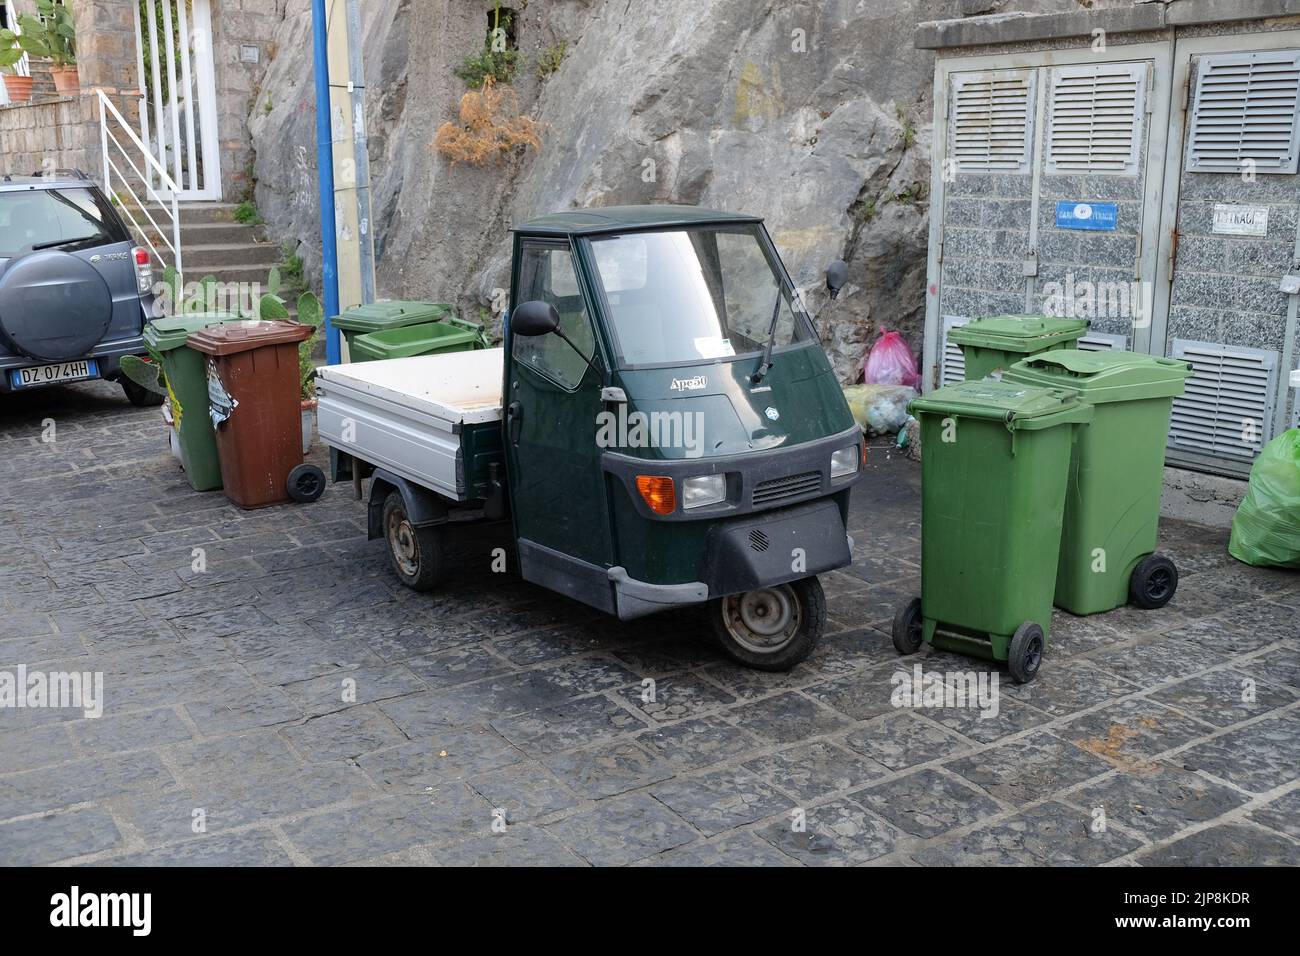 Ein leichtes Nutzfahrzeug aus dem Jahr Ape50, hergestellt vom italienischen Kraftfahrzeughersteller Piaggio, das in Sorrent (Italien) unter Abfallbehältern geparkt ist. Stockfoto